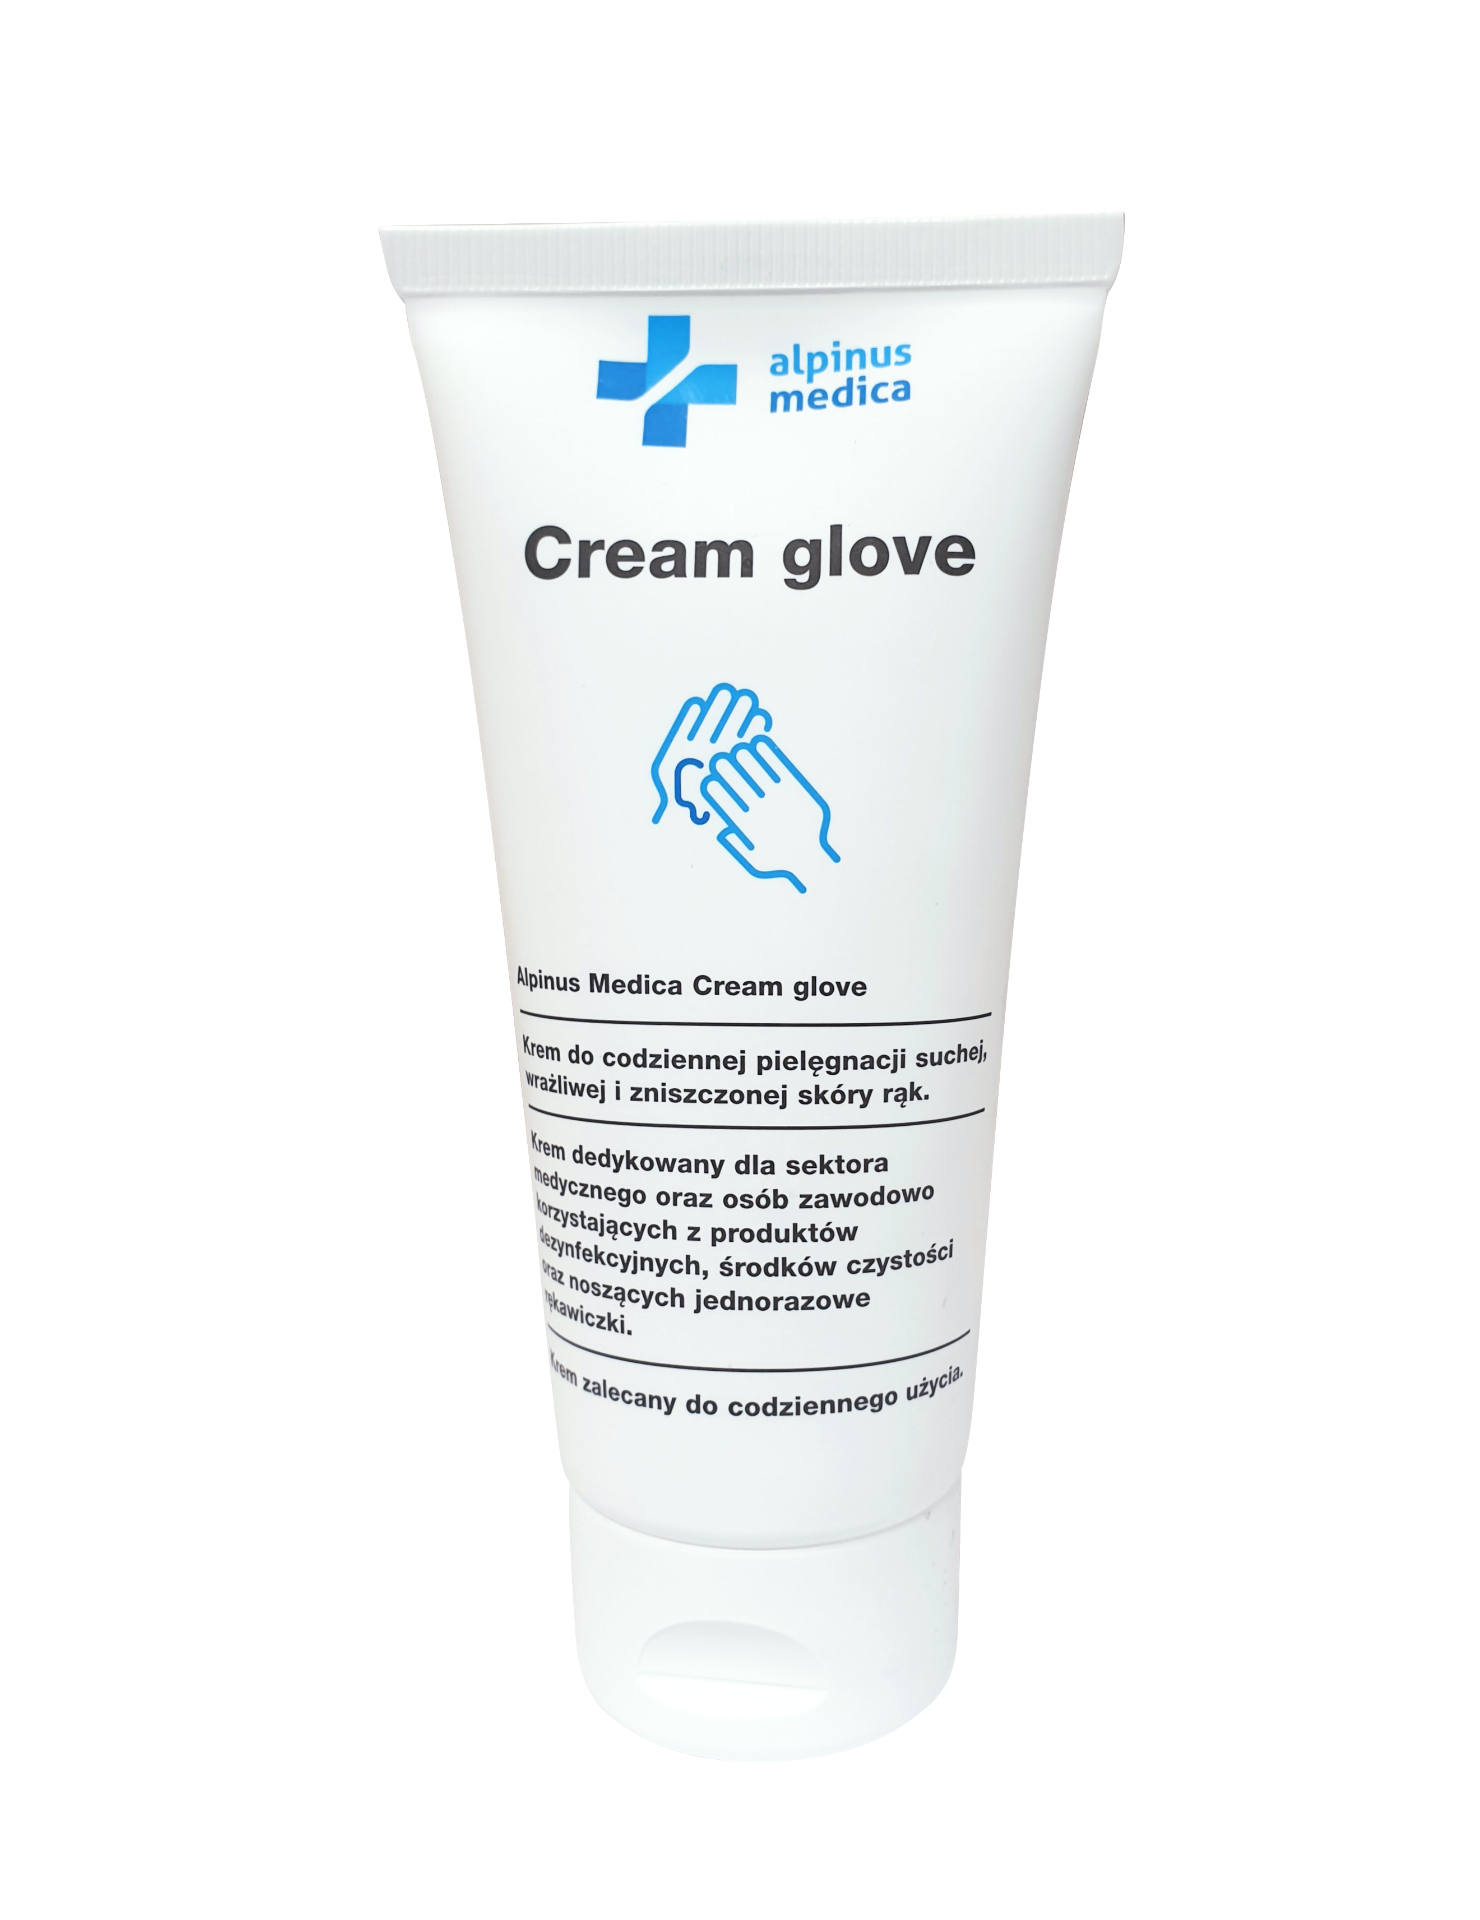 Cream Glove - Zdjęcia